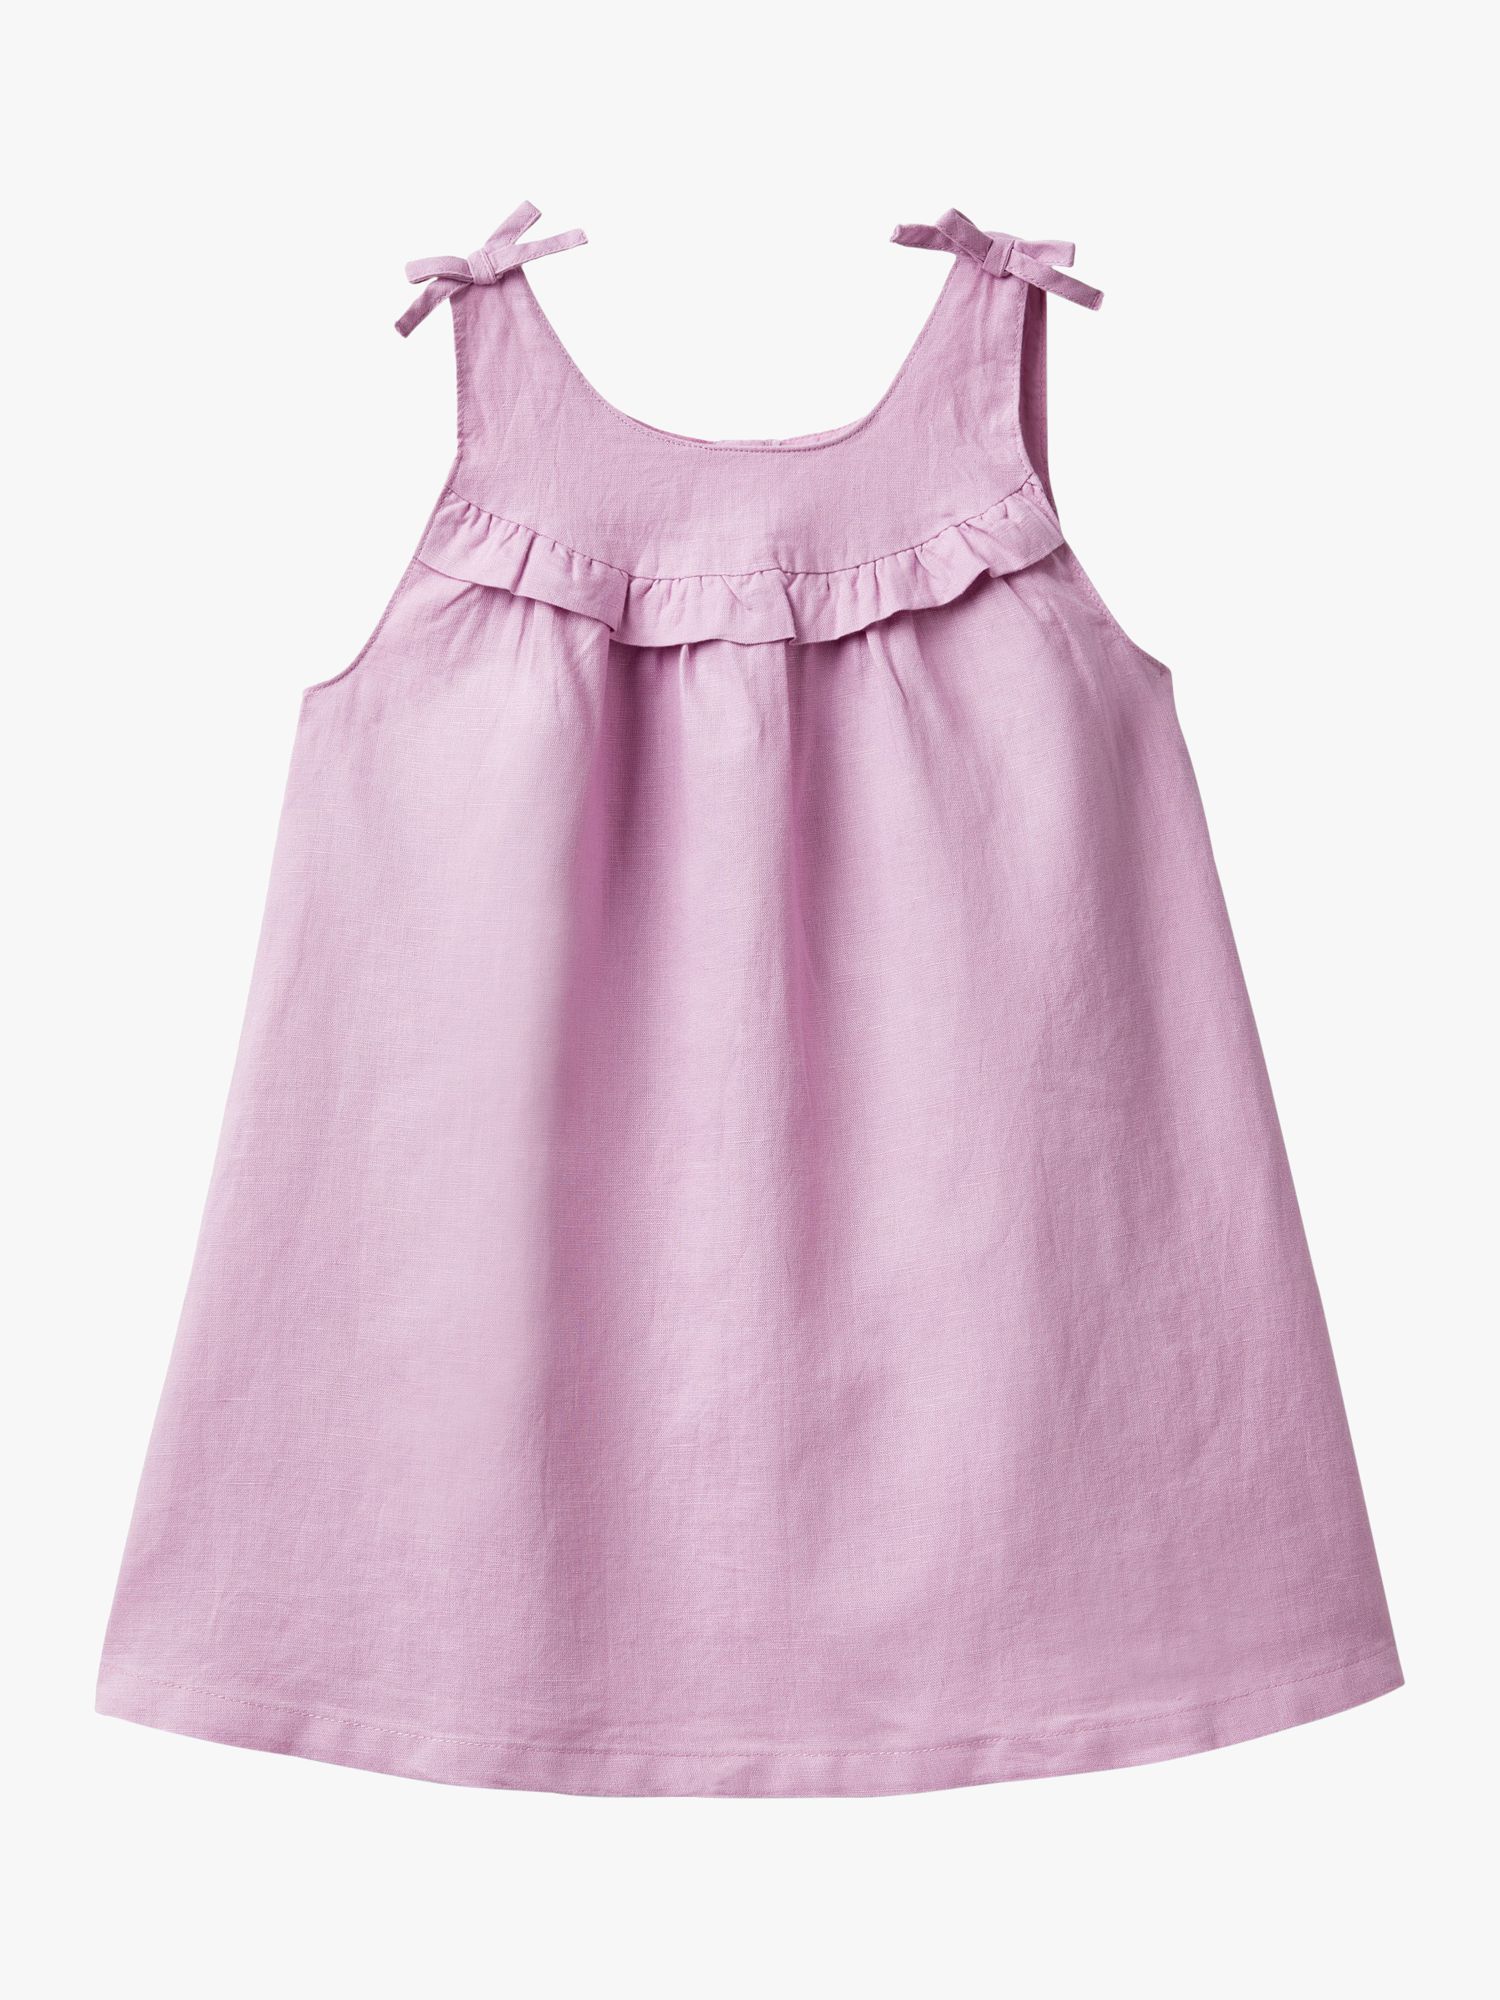 Benetton Kids' Linen Blend Ruffle Bow Detail Dress, Lilac, 3-4 years